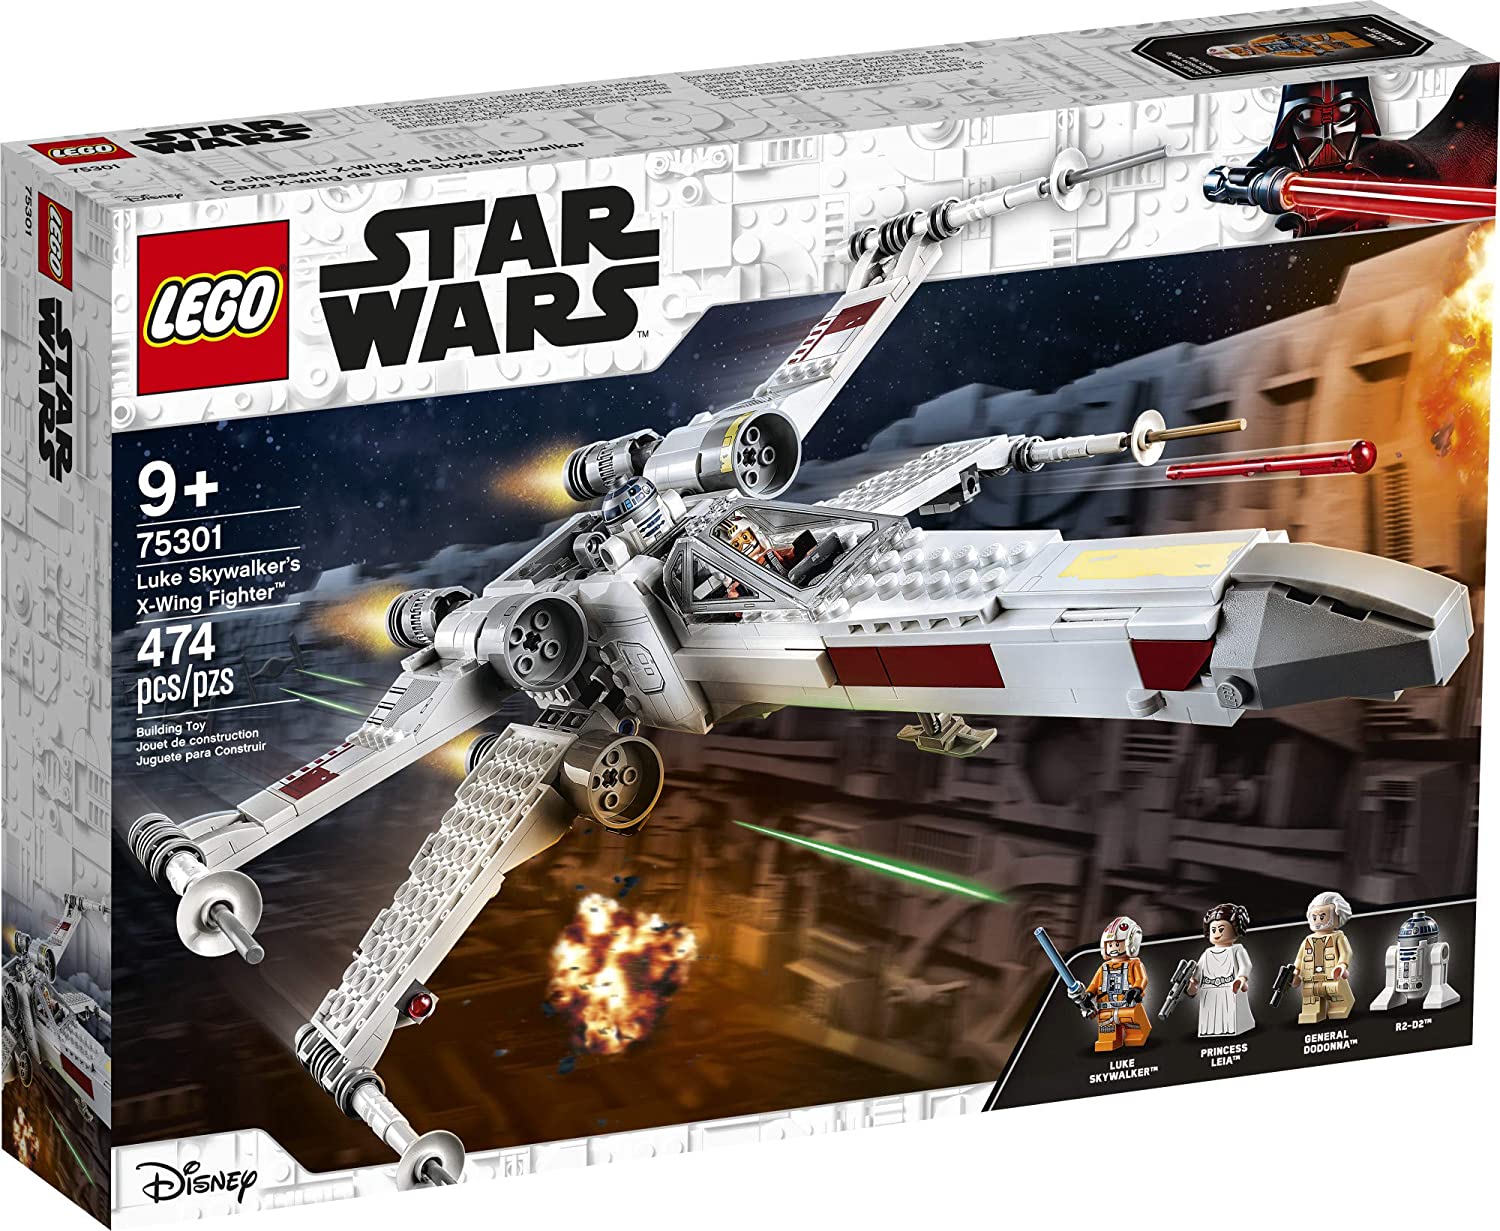 Kit de piezas de construcción LEGO Star Wars, X-Wing Fighter de Luke Skywalker 75301 para niños (474